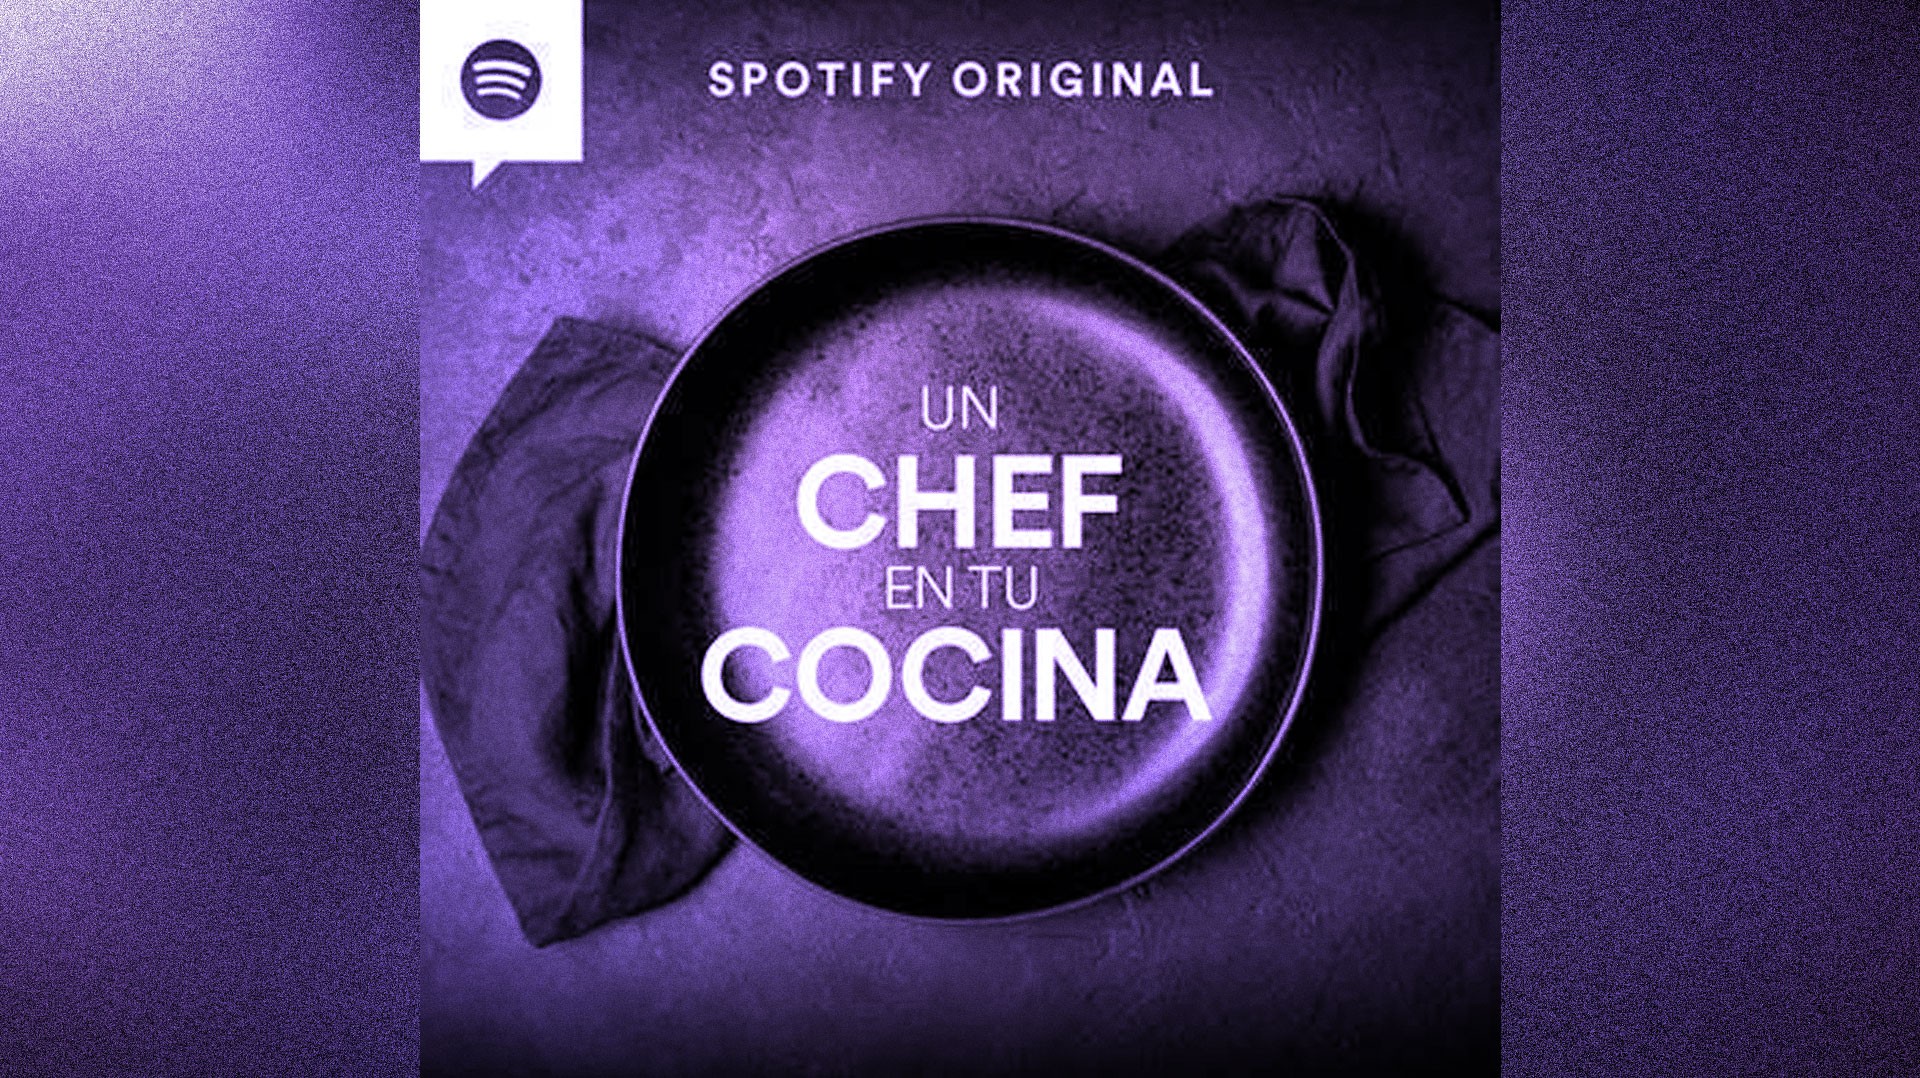 Recién salido del horno llega 'Un Chef en tu Cocina', el nuevo podcast original de Spotify